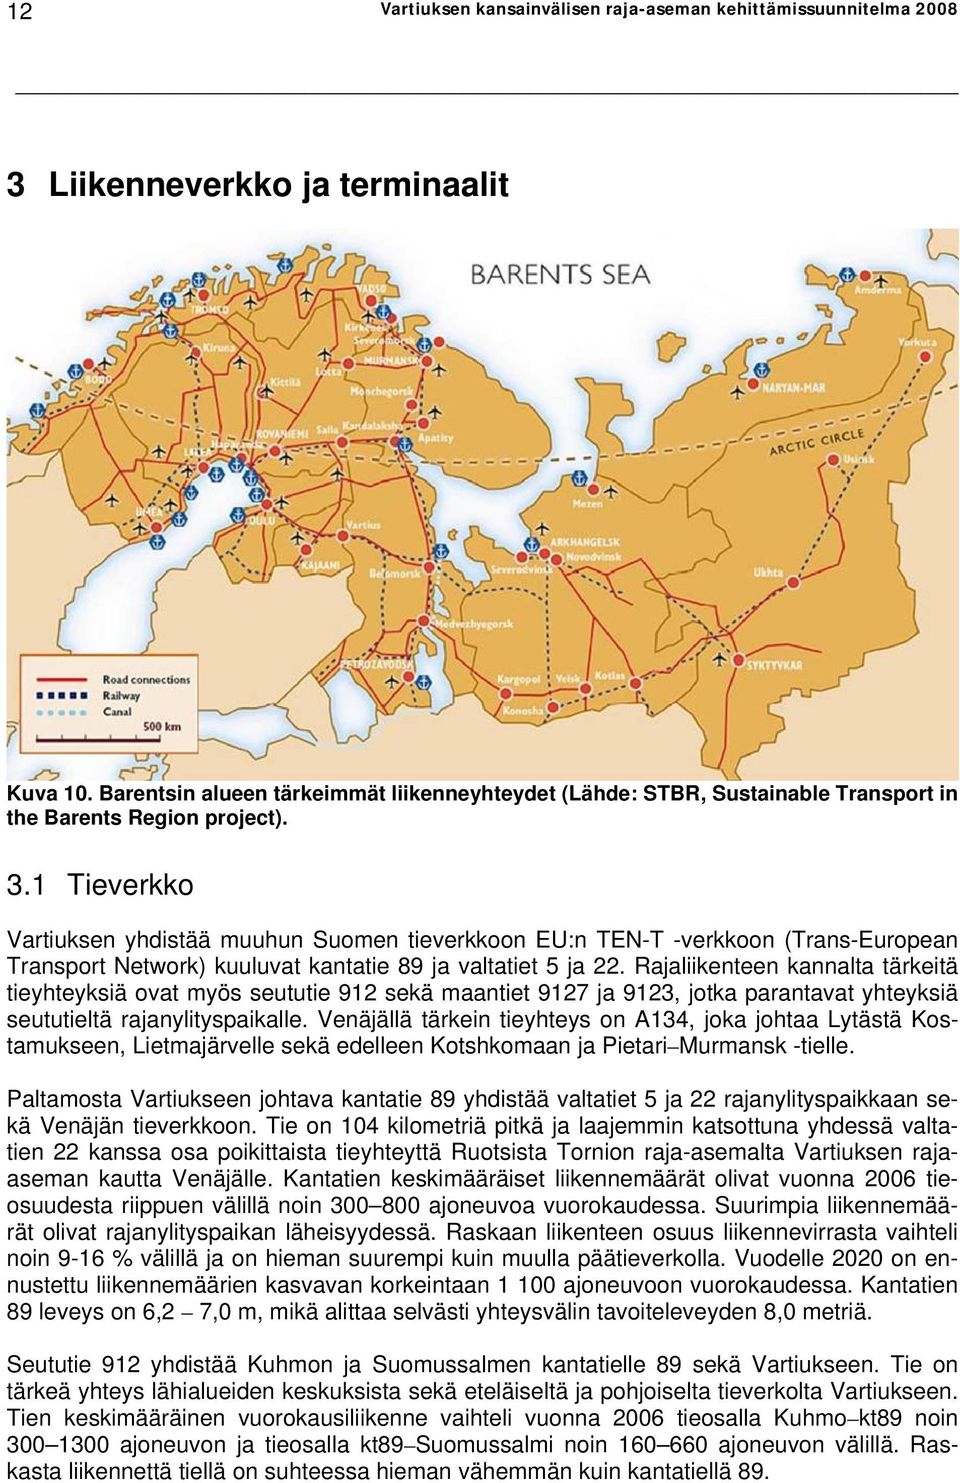 1 Tieverkko Vartiuksen yhdistää muuhun Suomen tieverkkoon EU:n TEN-T -verkkoon (Trans-European Transport Network) kuuluvat kantatie 89 ja valtatiet 5 ja 22.